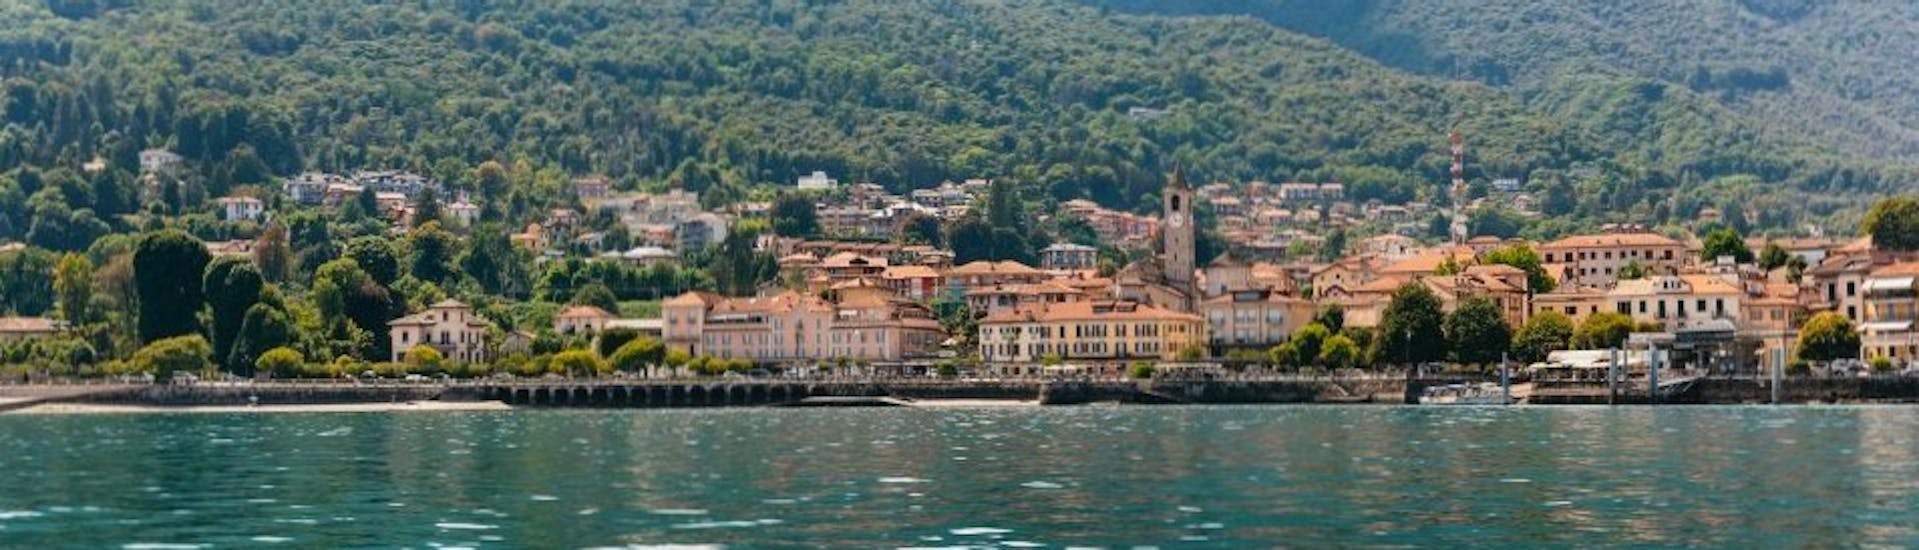 Privé boottocht van Stresa naar Isola dei Pescatori (Isola Superiore) met toeristische attracties.